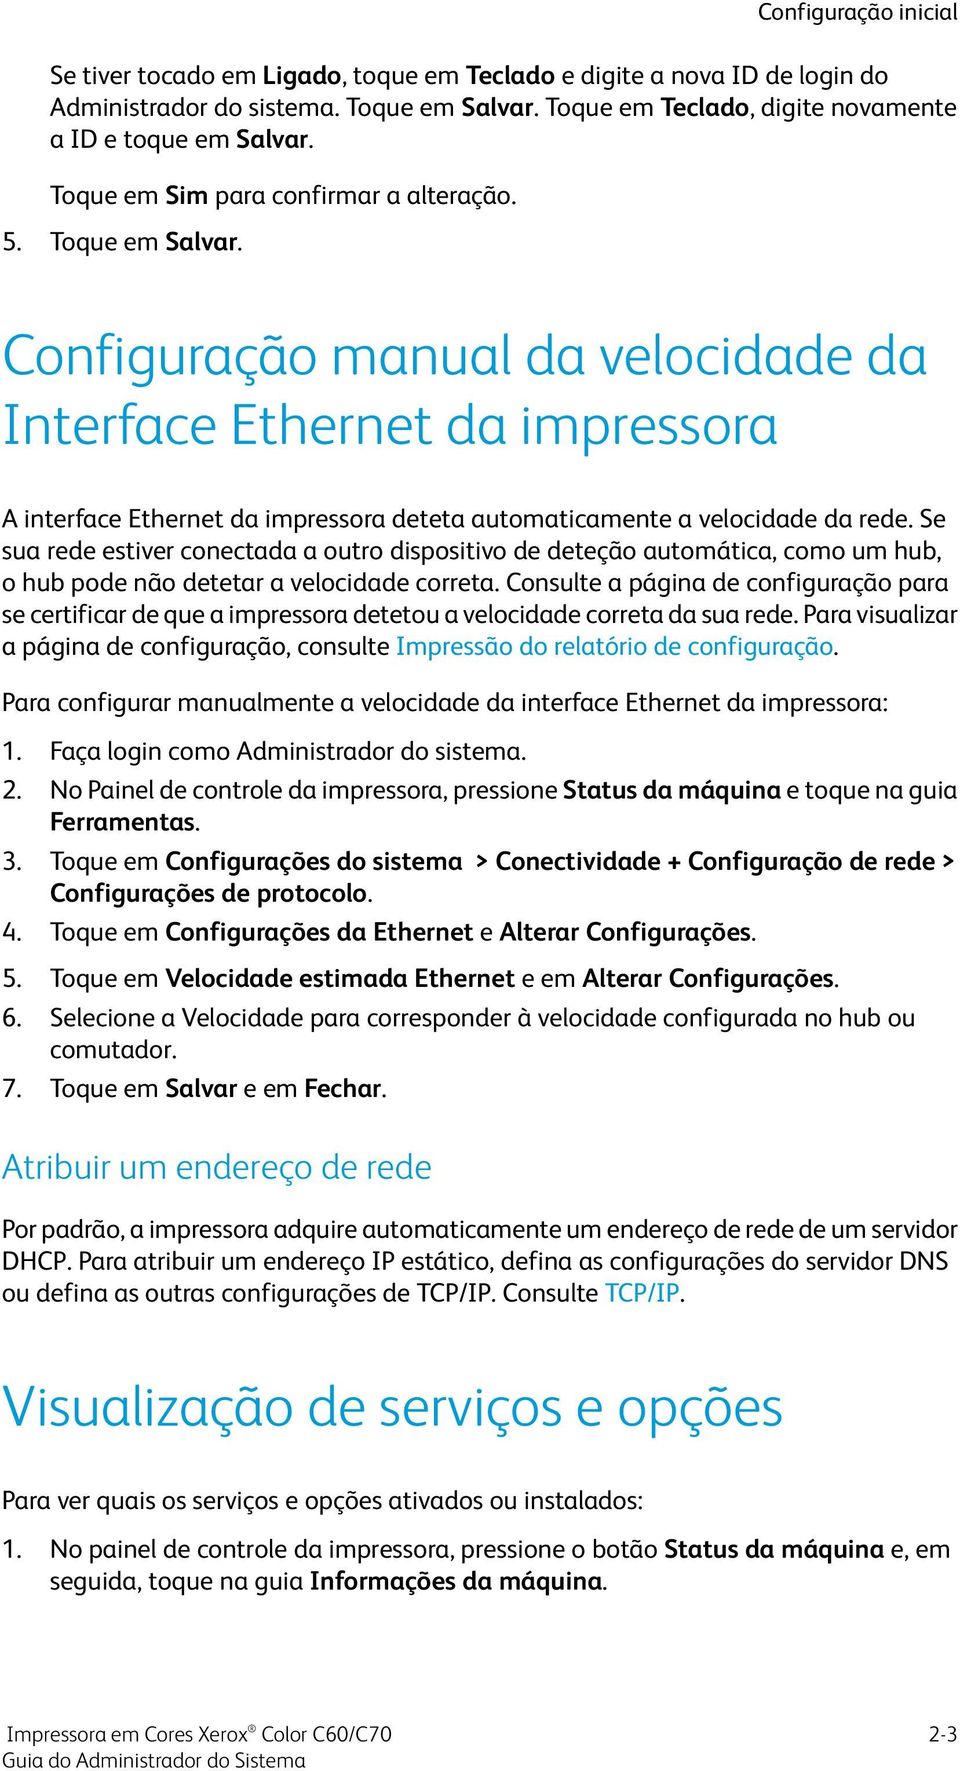 Configuração inicial Configuração manual da velocidade da Interface Ethernet da impressora A interface Ethernet da impressora deteta automaticamente a velocidade da rede.